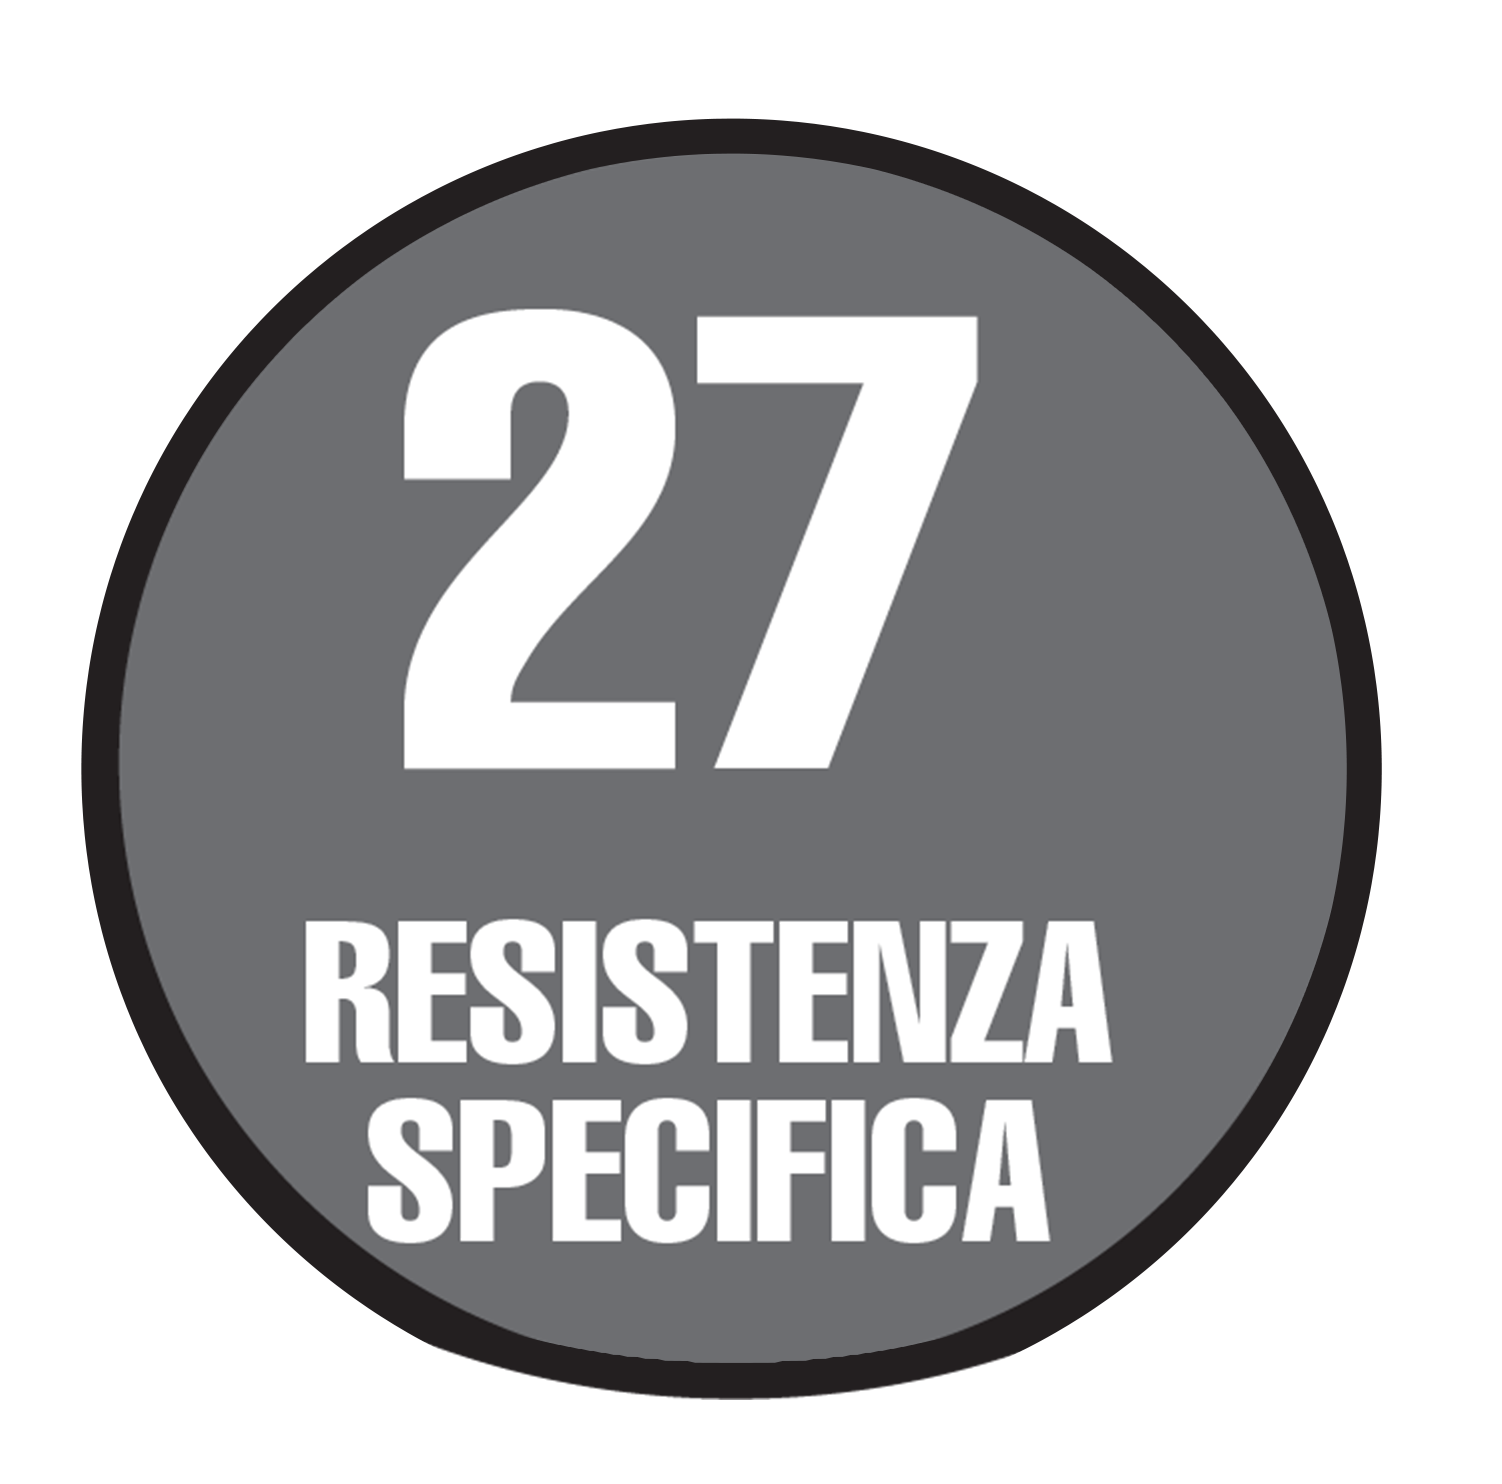 Resistenza Specifica "27"